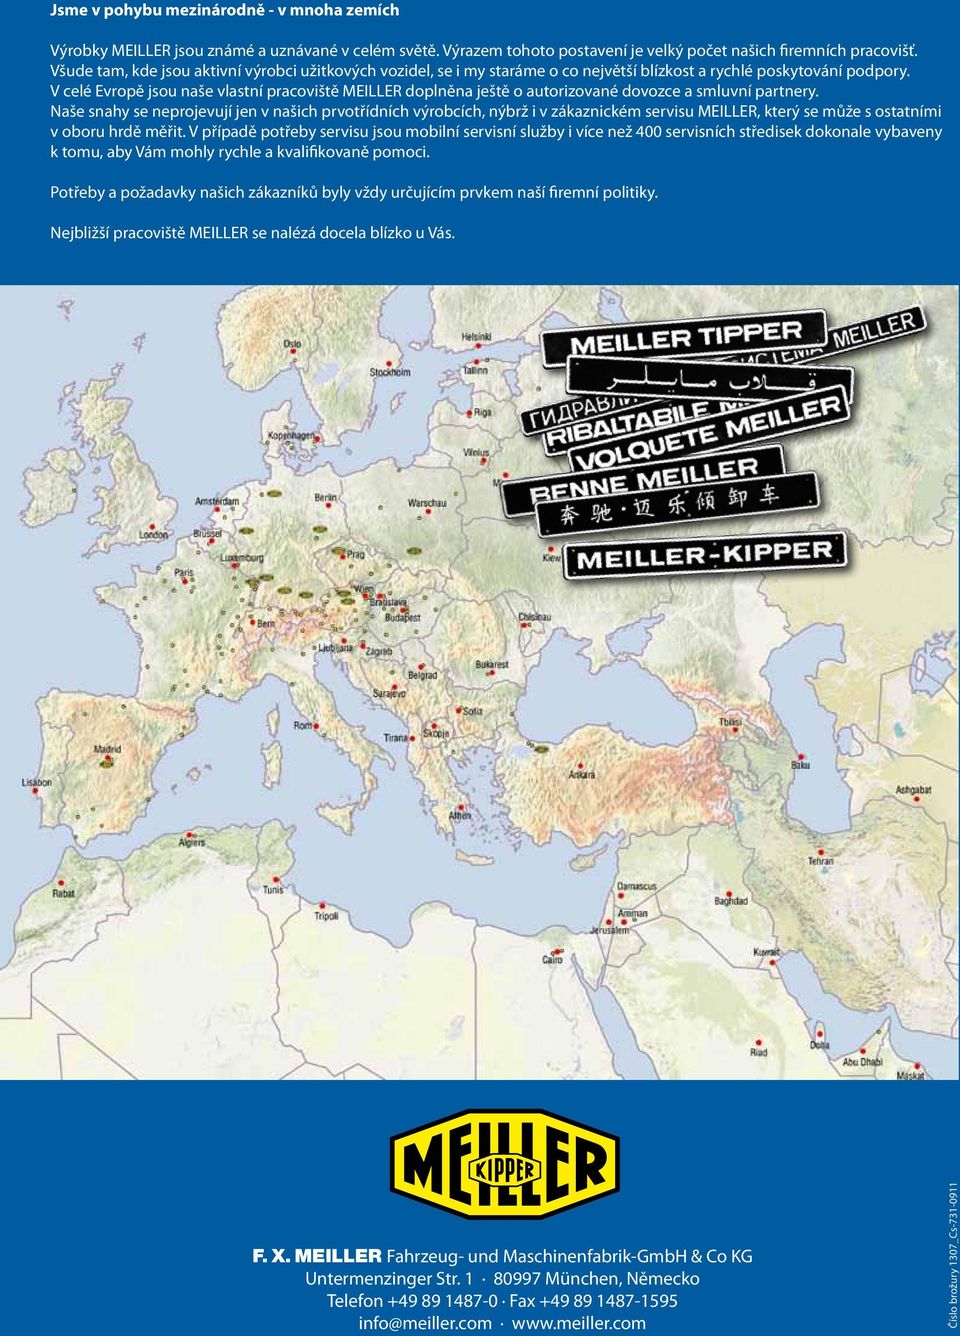 V celé Evropě jsou naše vlastní pracoviště MEILLER doplněna ještě o autorizované dovozce a smluvní partnery.